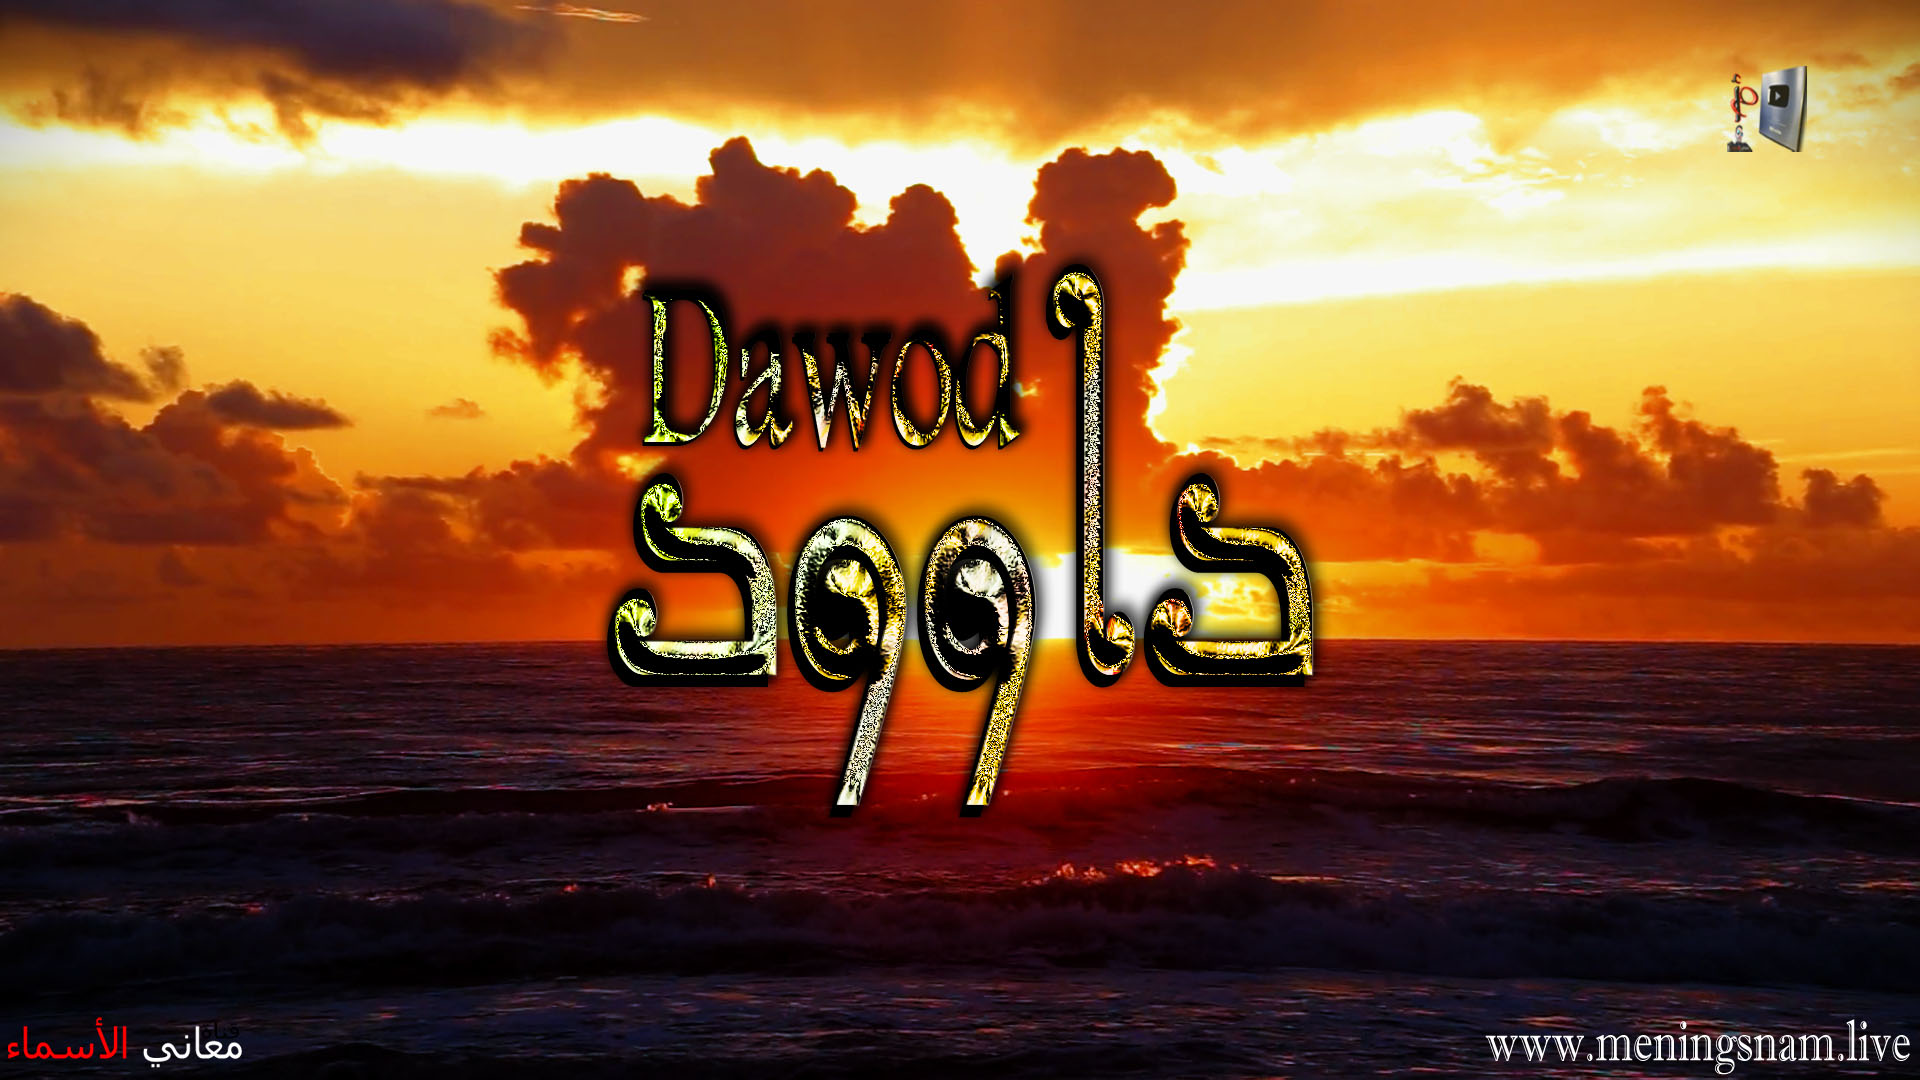 معنى اسم, داوود, وصفات, حامل, هذا الاسم, Dawood,